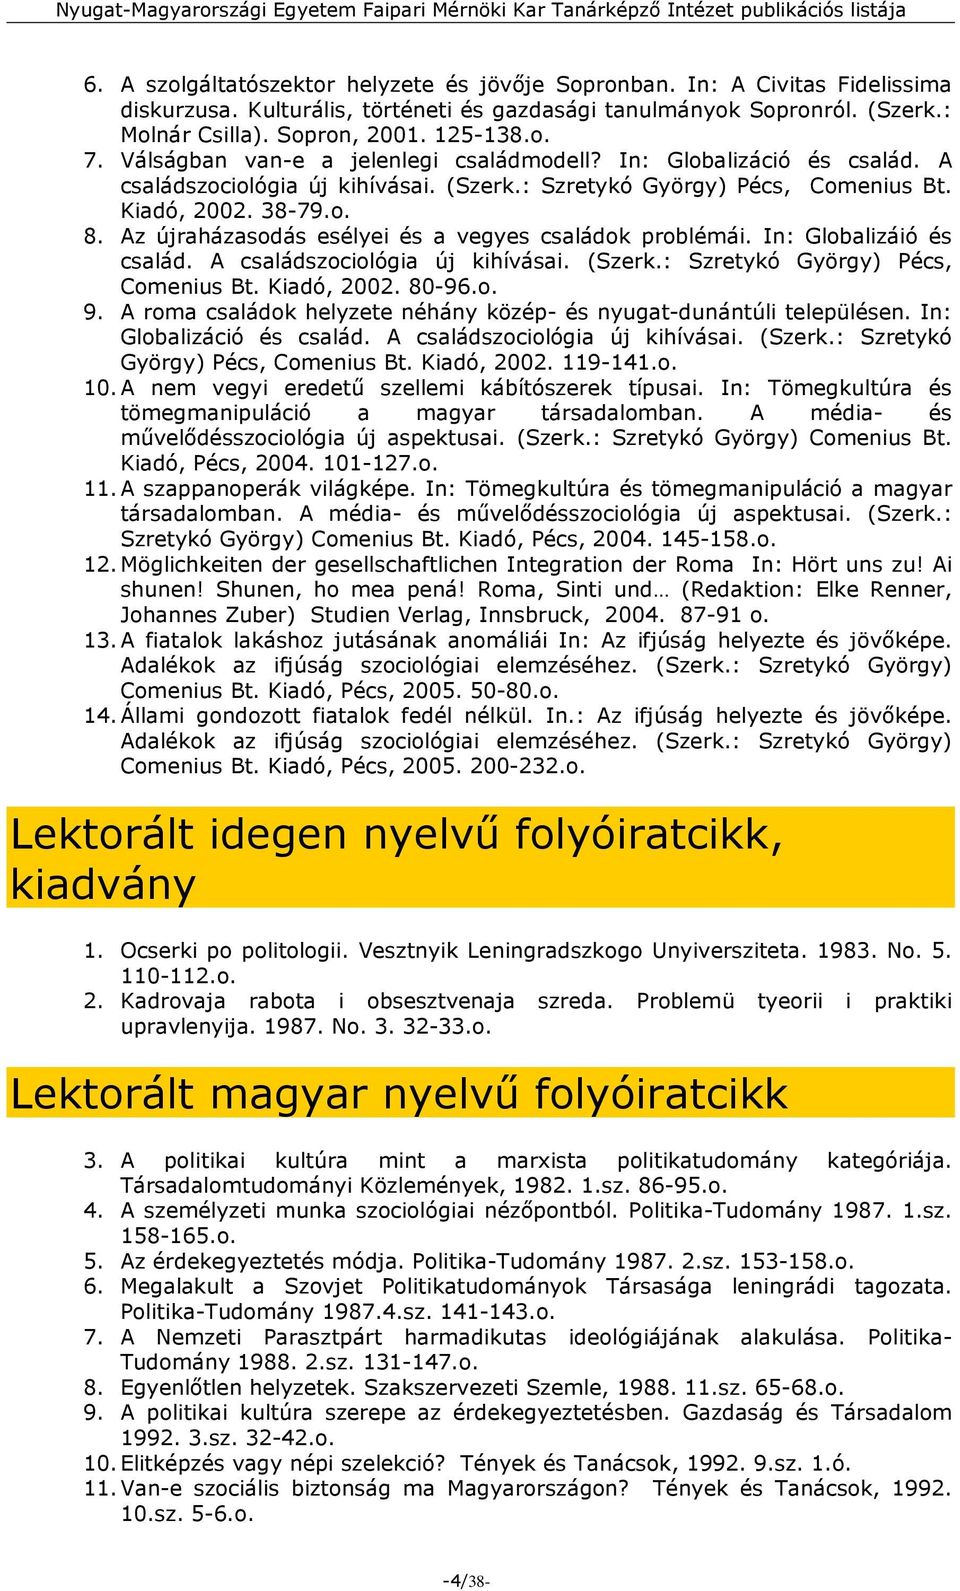 Nyugat-Magyarországi Egyetem. Faipari Mérnöki Kar. (2007. január) - PDF  Ingyenes letöltés